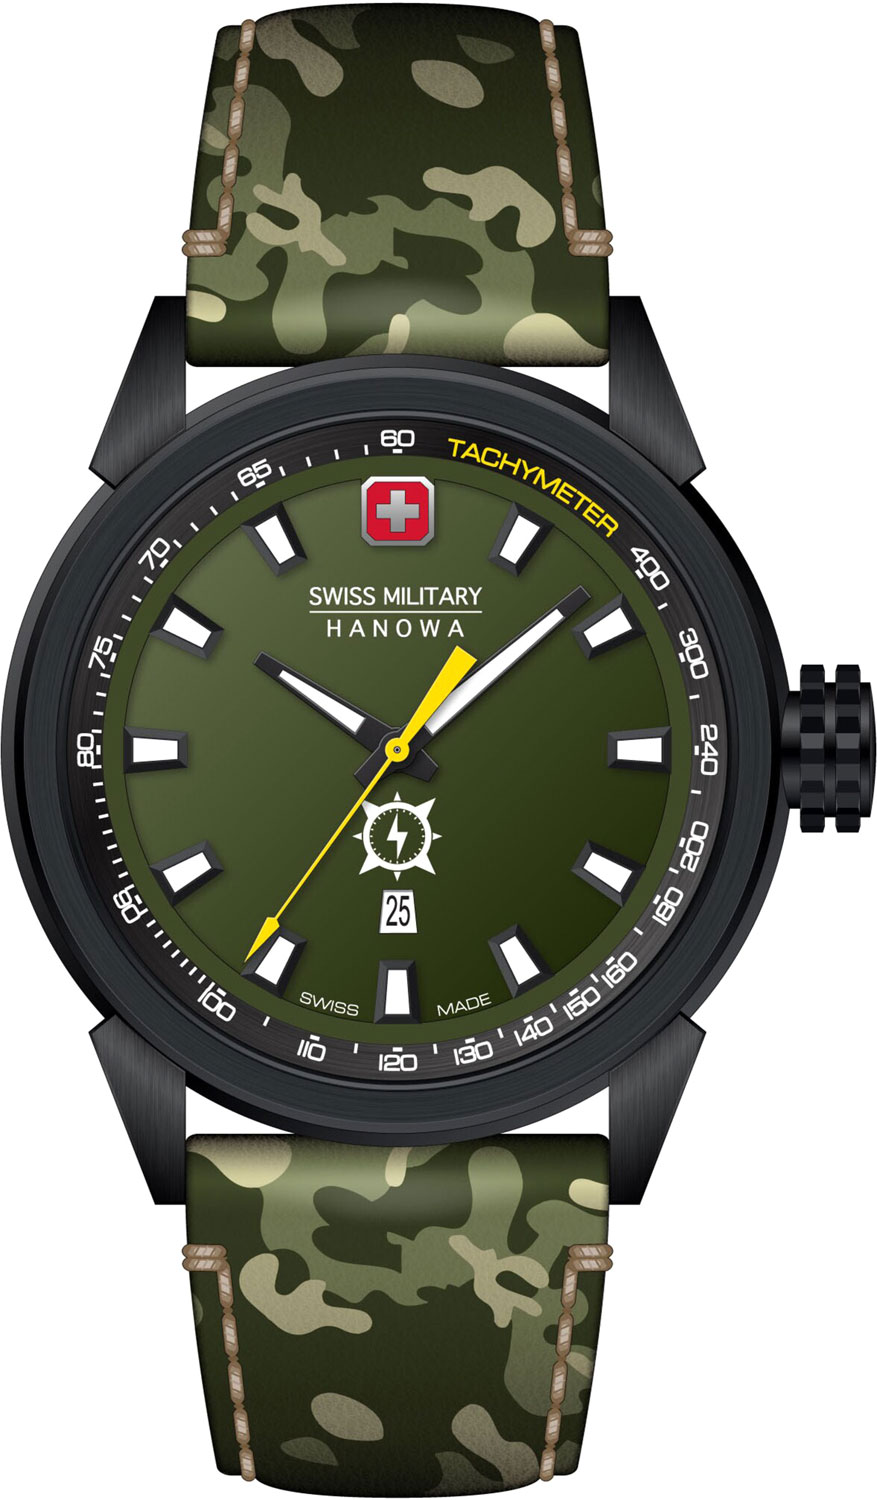    Swiss Military Hanowa SMWGB2100130